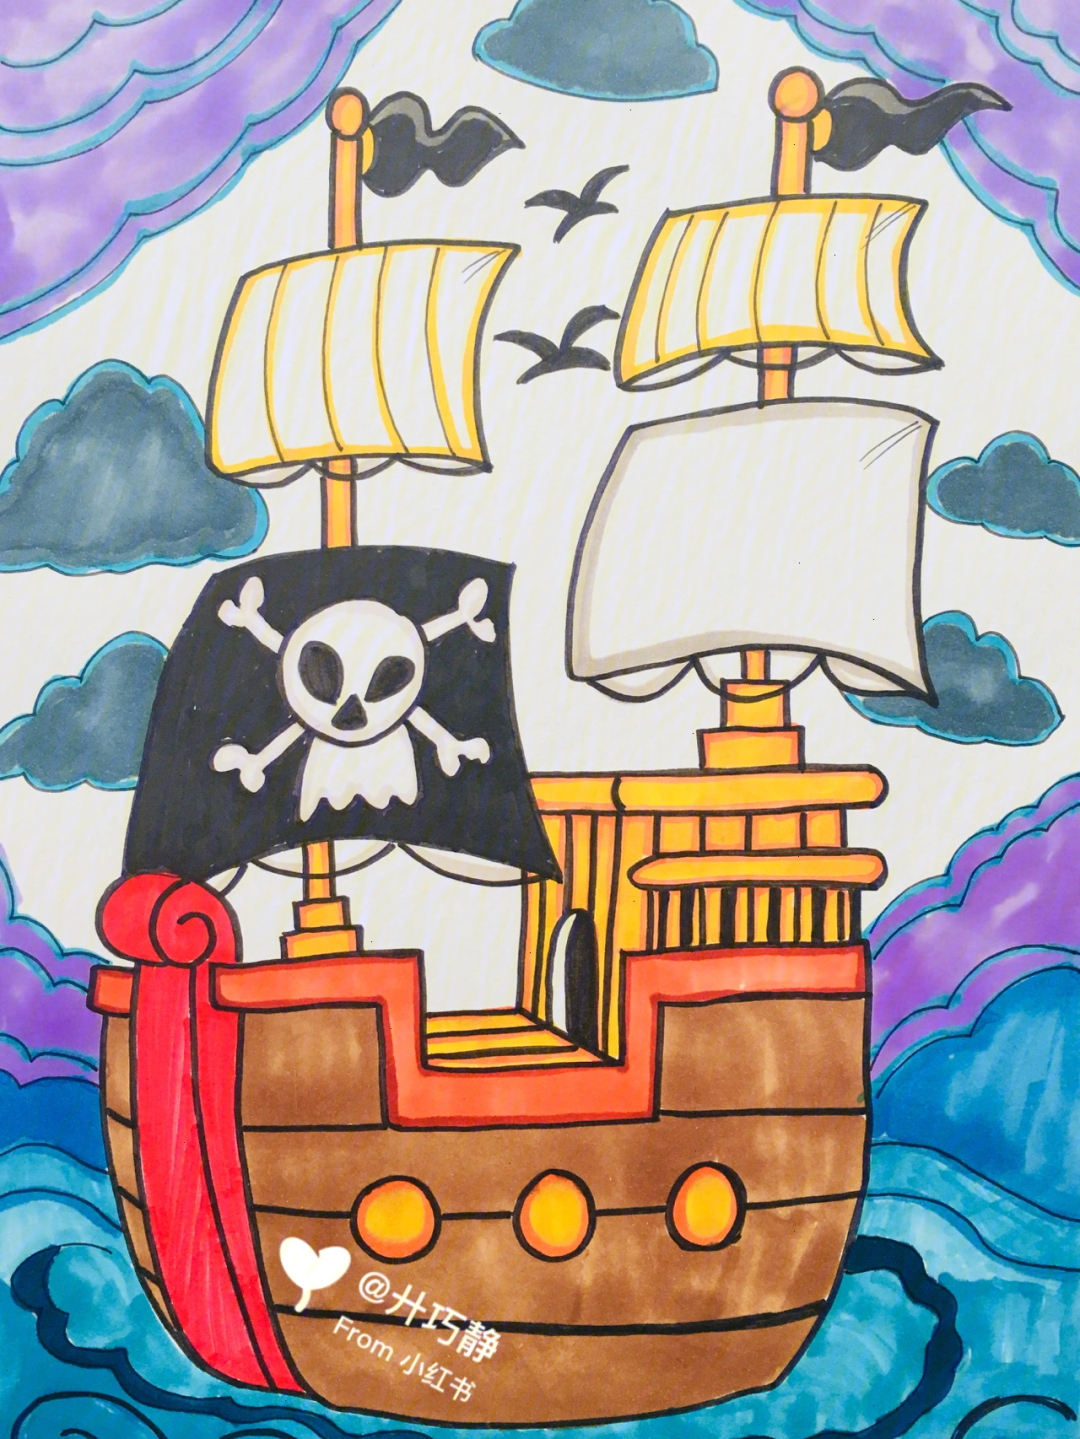 画海盗船 涂色图片